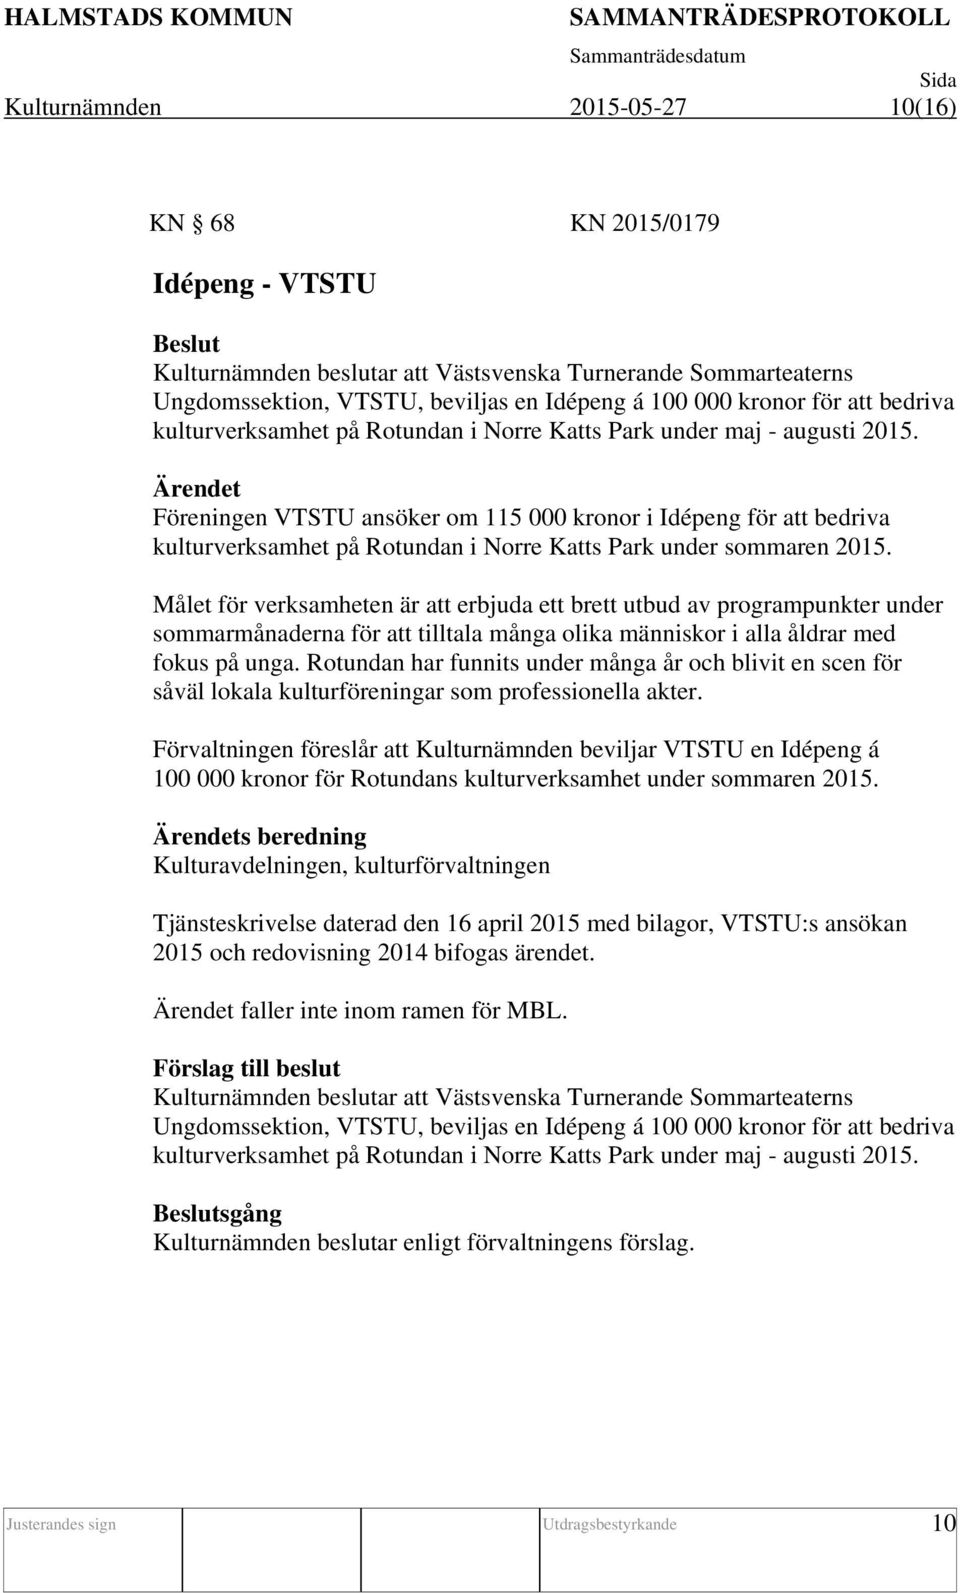 Föreningen VTSTU ansöker om 115 000 kronor i Idépeng för att bedriva kulturverksamhet på Rotundan i Norre Katts Park under sommaren 2015.